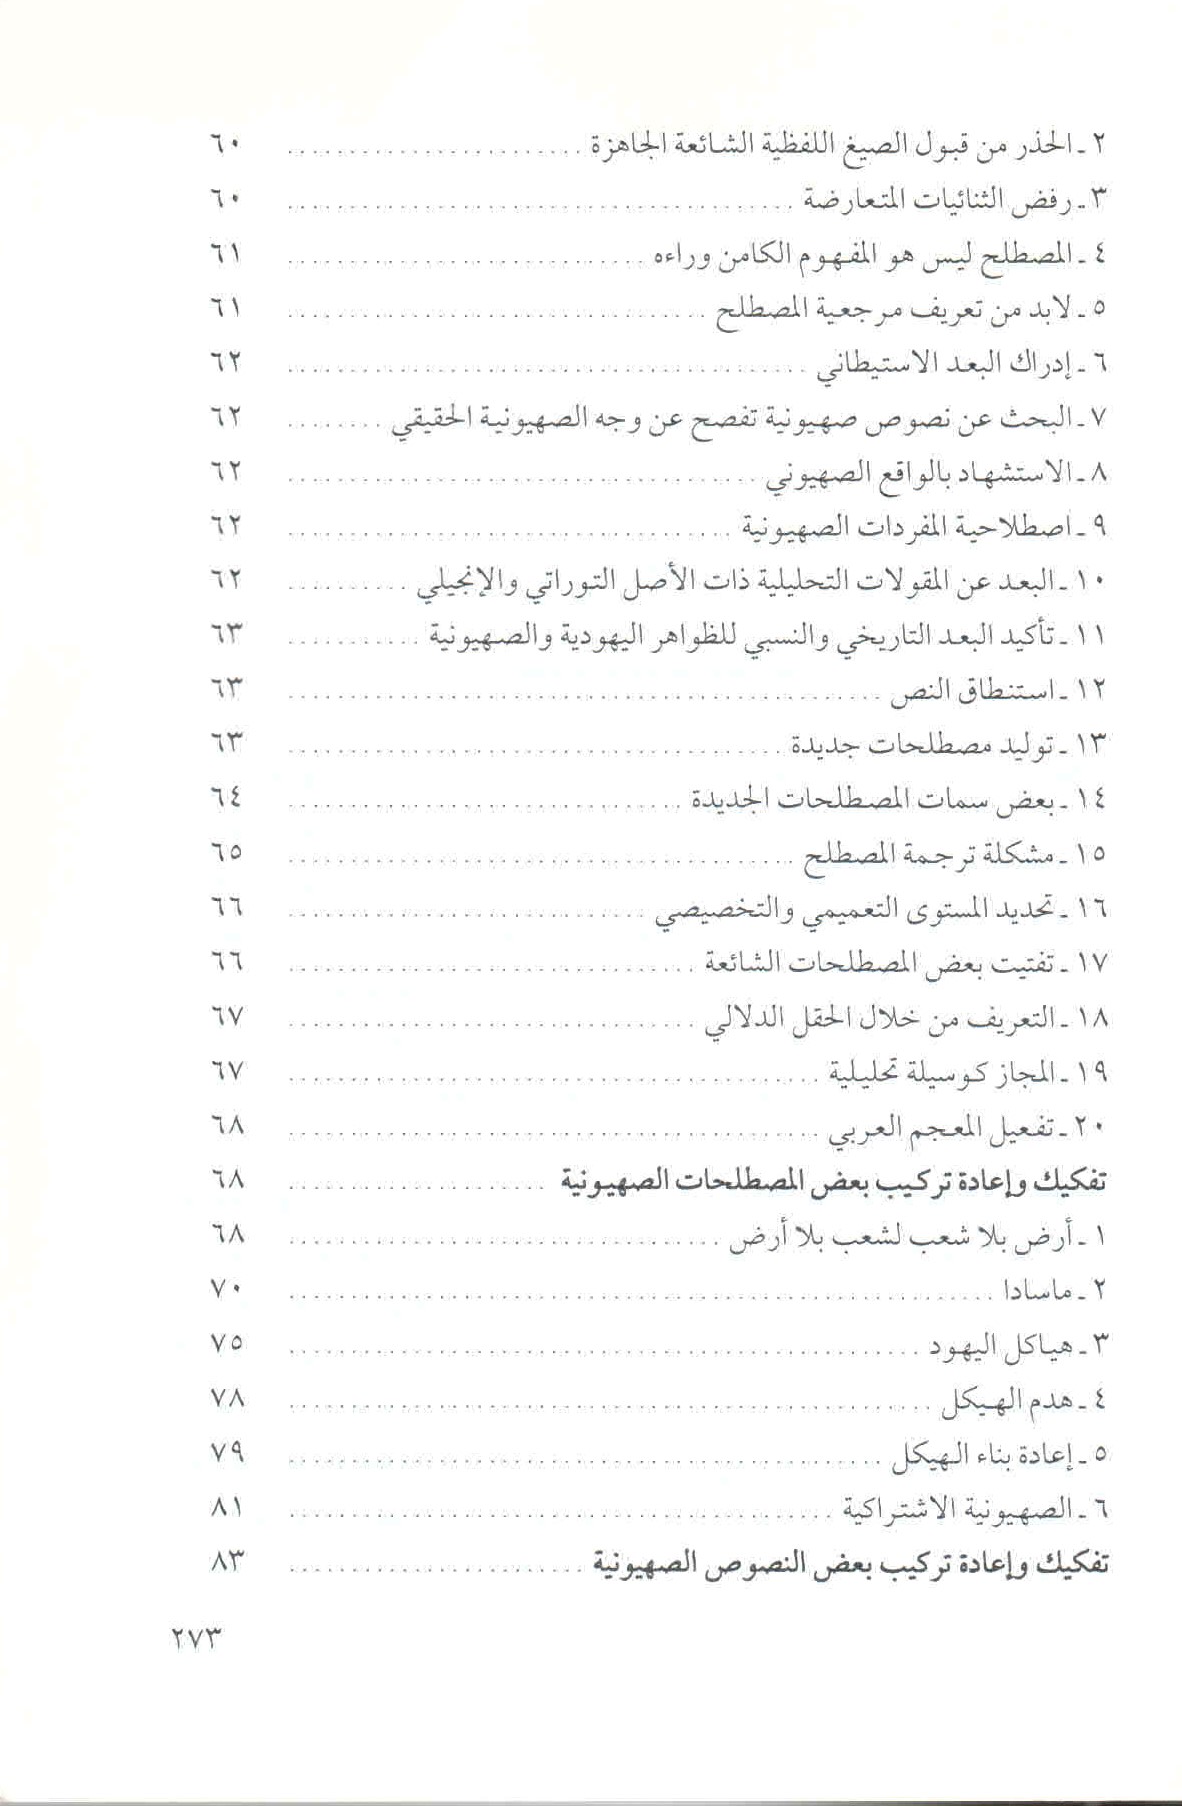 قائمة محتويات كتاب في الخطاب والمصطلح الصهيوني ص. 273.